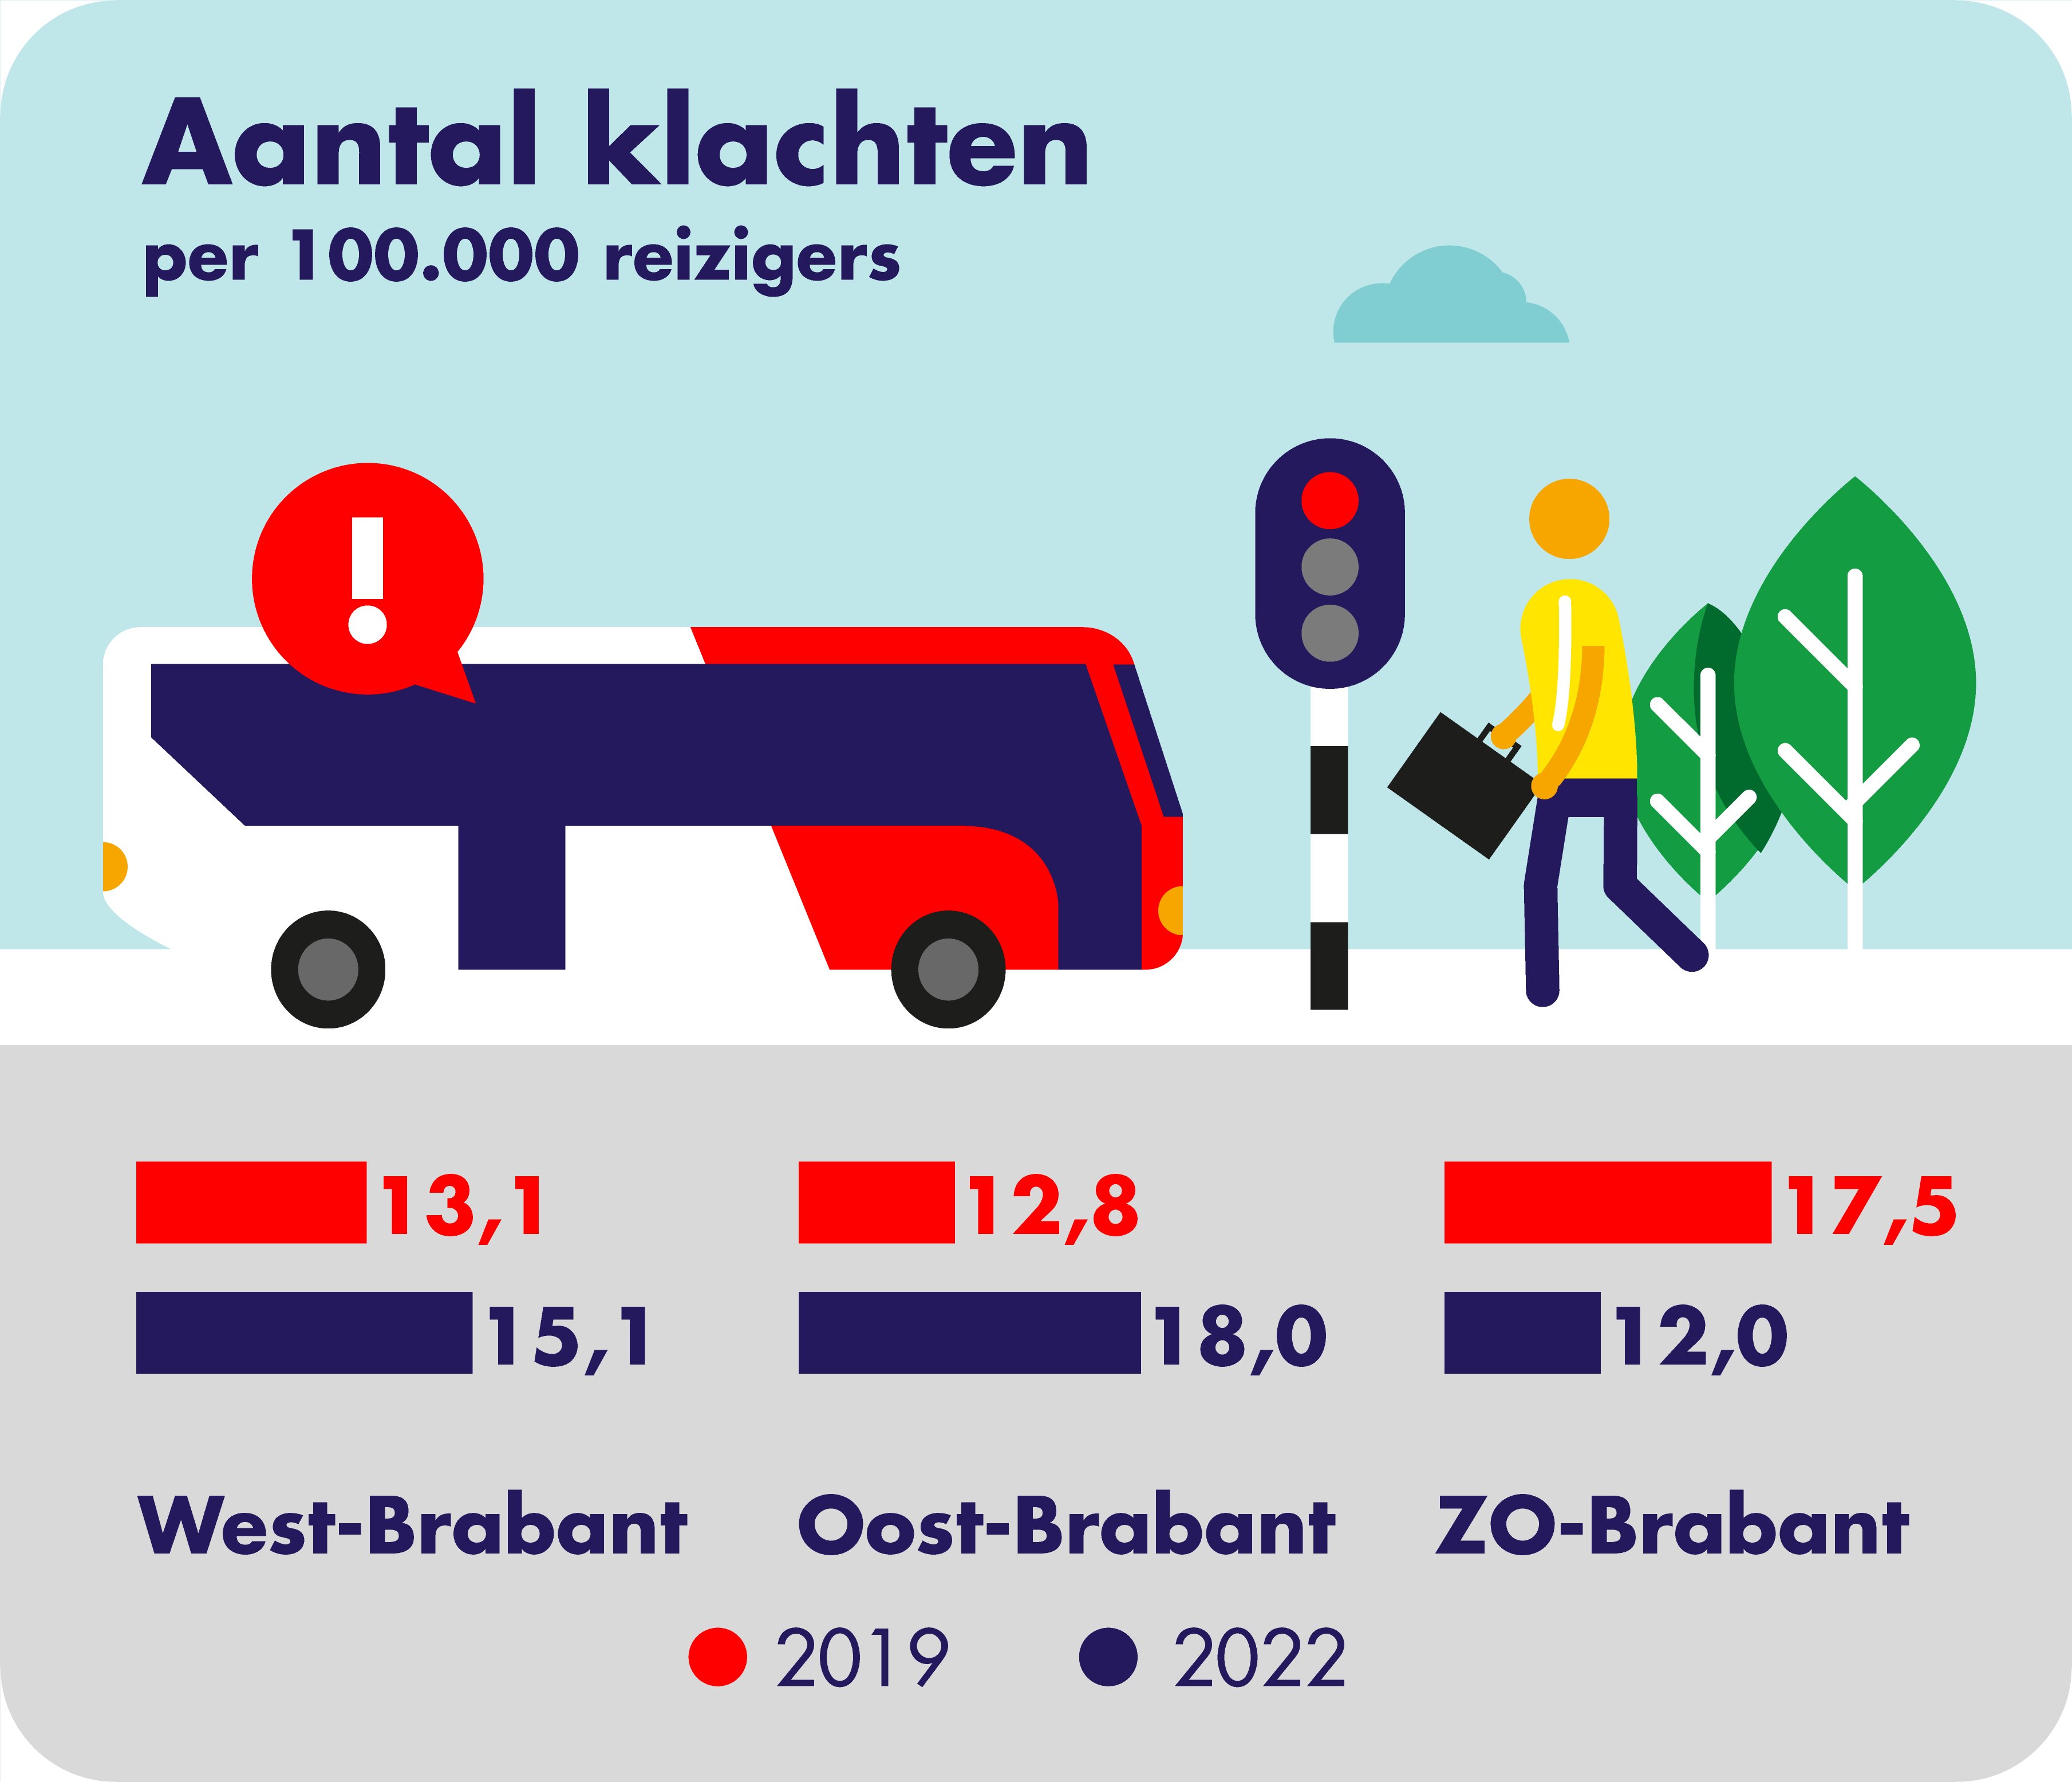 Op deze afbeelding is het aantal geregistreerde klachten klachten per concessiegebied weergegeven. In 2019 waren er in West-Brabant 13,1 klachten per 100.000 reizigers geregistreerd en in 2022 15,1. In 2019 waren er in Oost-Brabant 12,8 klachten per 100.000 reizigers geregistreerd en in 2022 18,0. In 2019 waren er in Zuidoost-Brabant 17,5 klachten per 100.000 reizigers geregistreerd en in 2022 12,0.